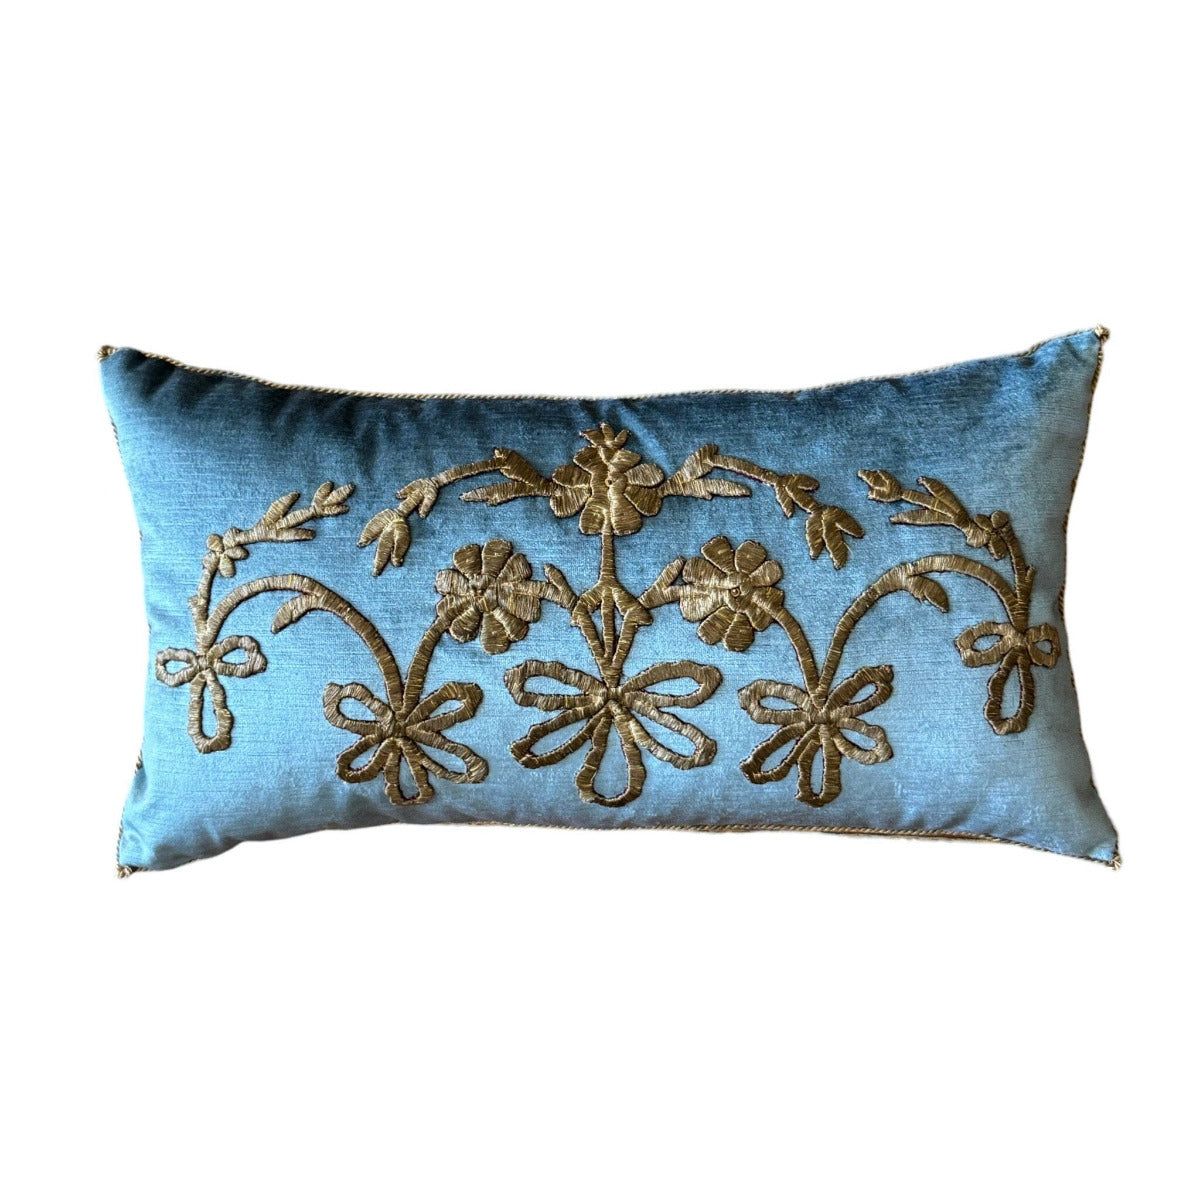 Antique Ottoman Empire Gold Metallic Embroidery (#E030524 | 13 x 24") New Pillows B. Viz Design 